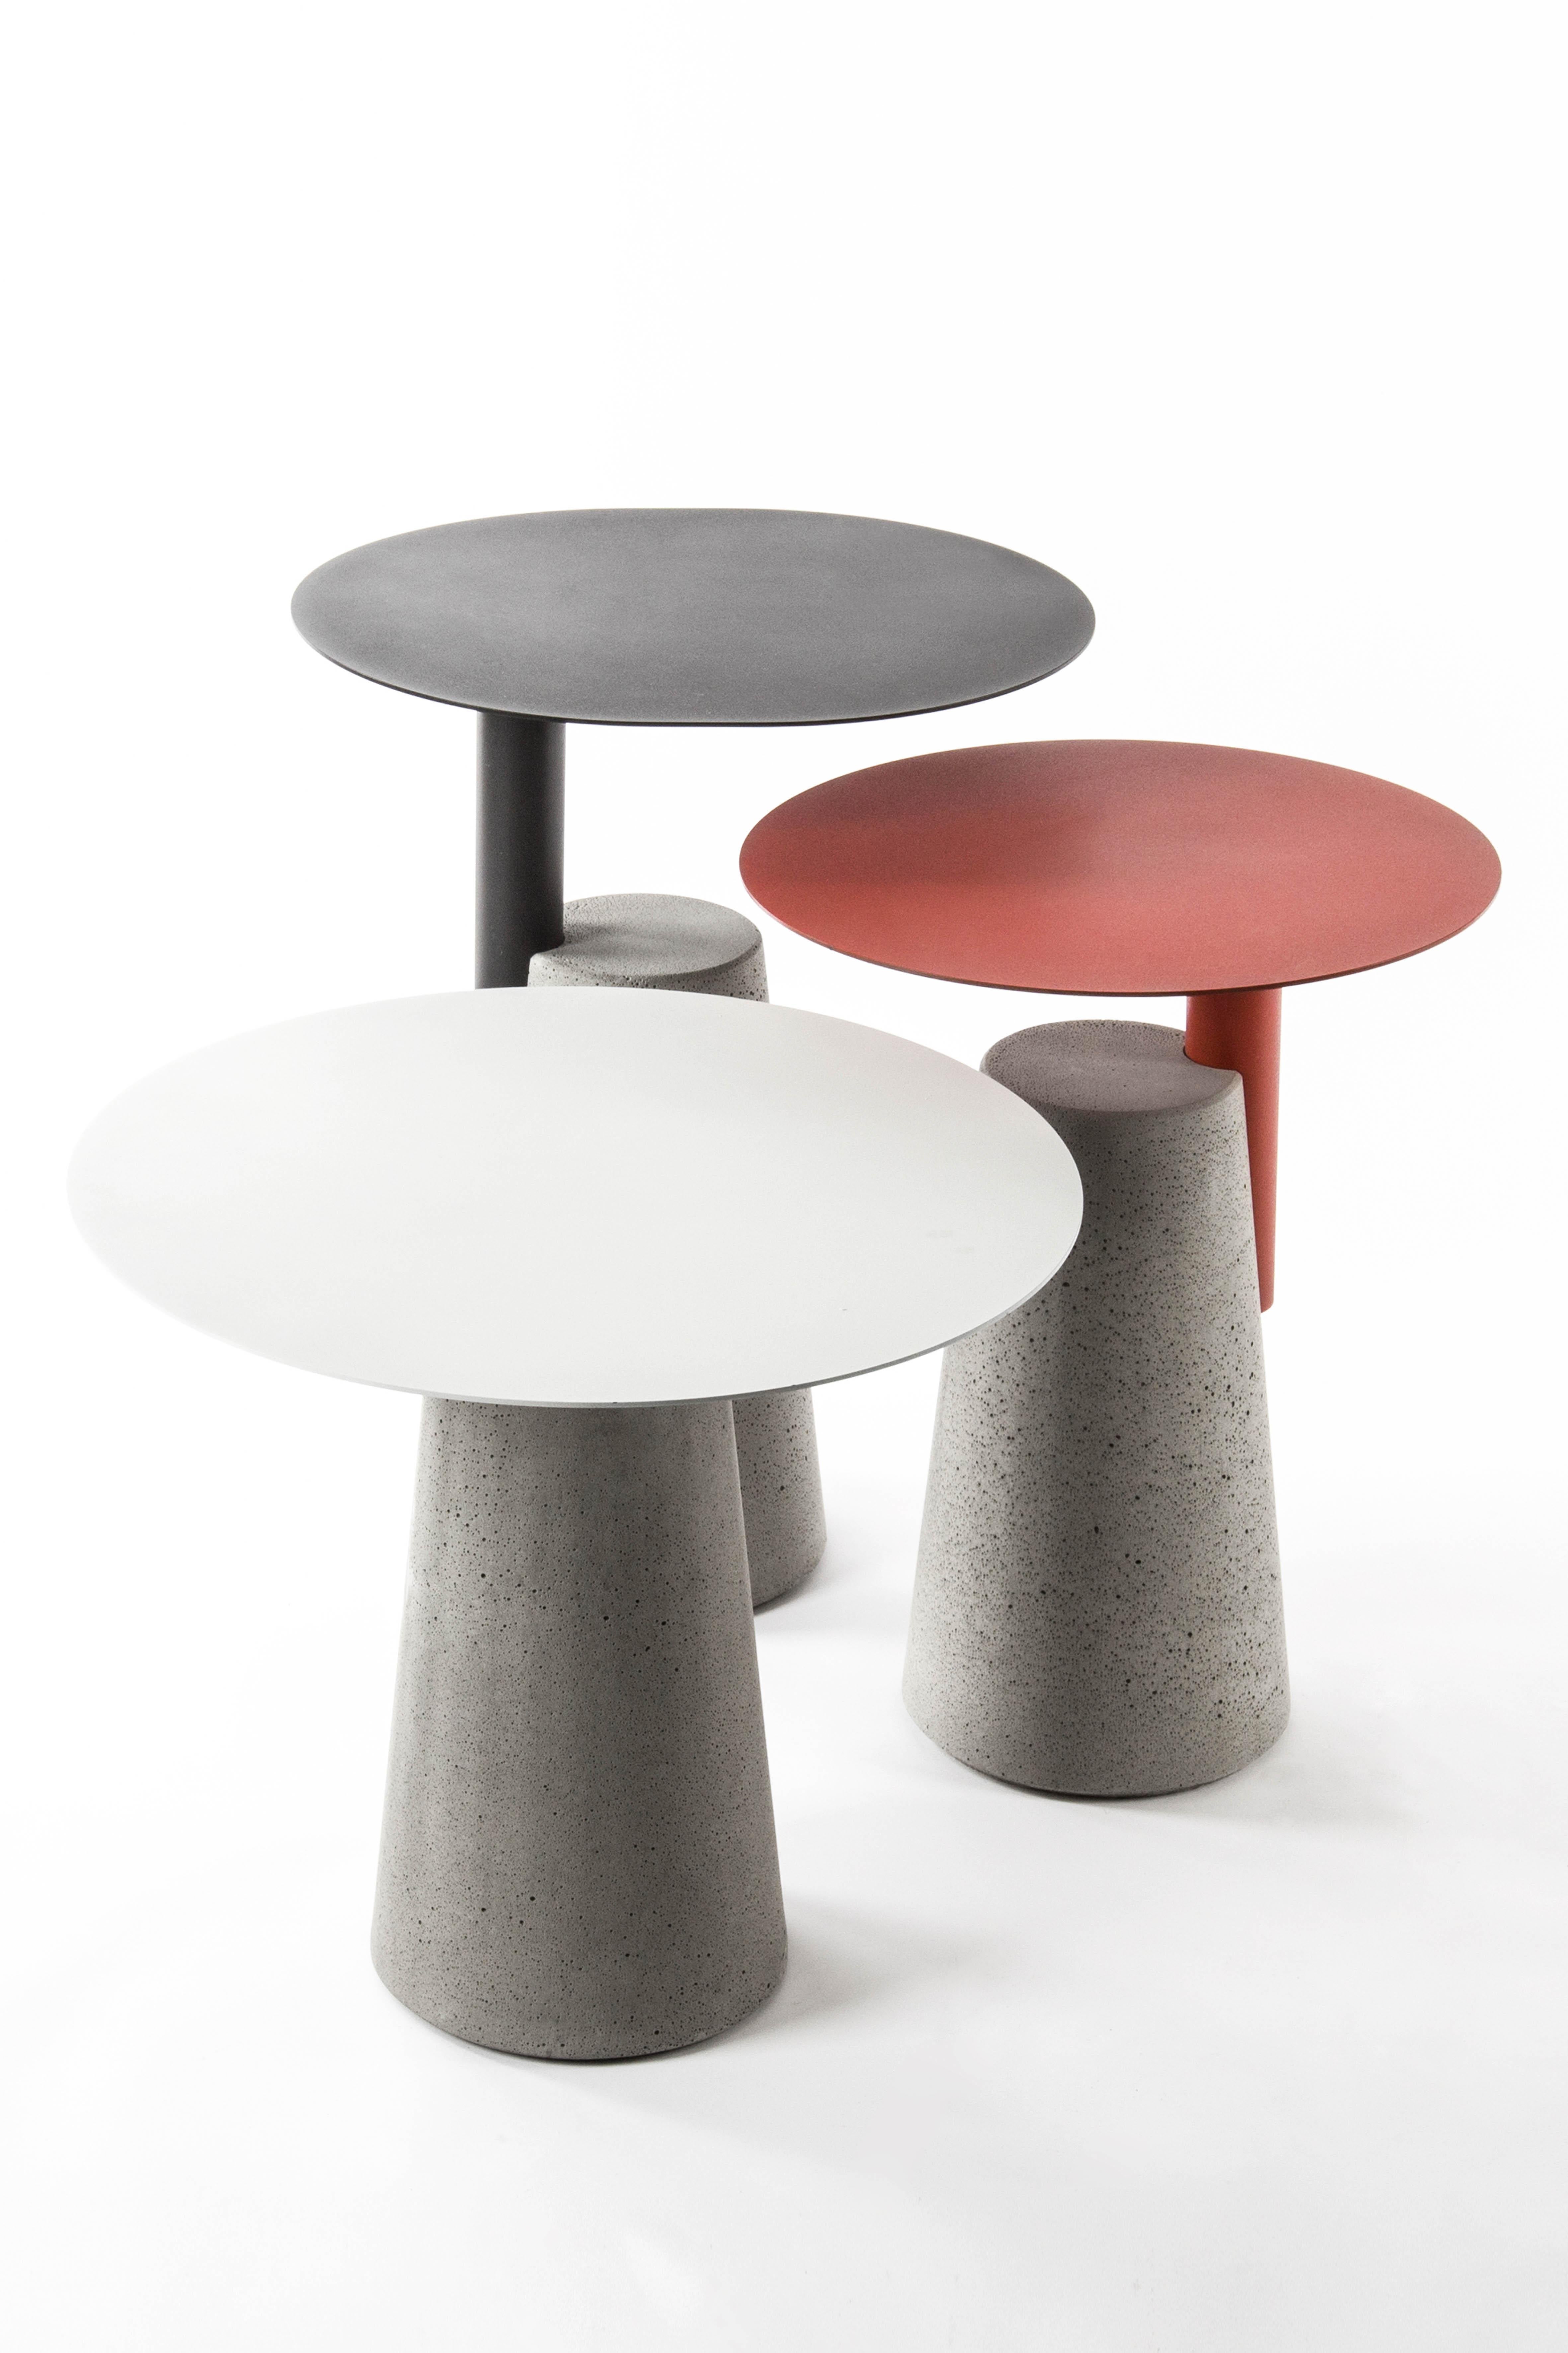 bAI est une collection de tables d'appoint
par Bentu Design

Plateau de table : acier
Base de la table : béton

3 tailles disponibles : 
- Petit : H 45 cm - D 50 cm
- Moyen : H 52 cm - P 40 cm
- Grand : H 60 cm - P 45 cm

3 couleurs